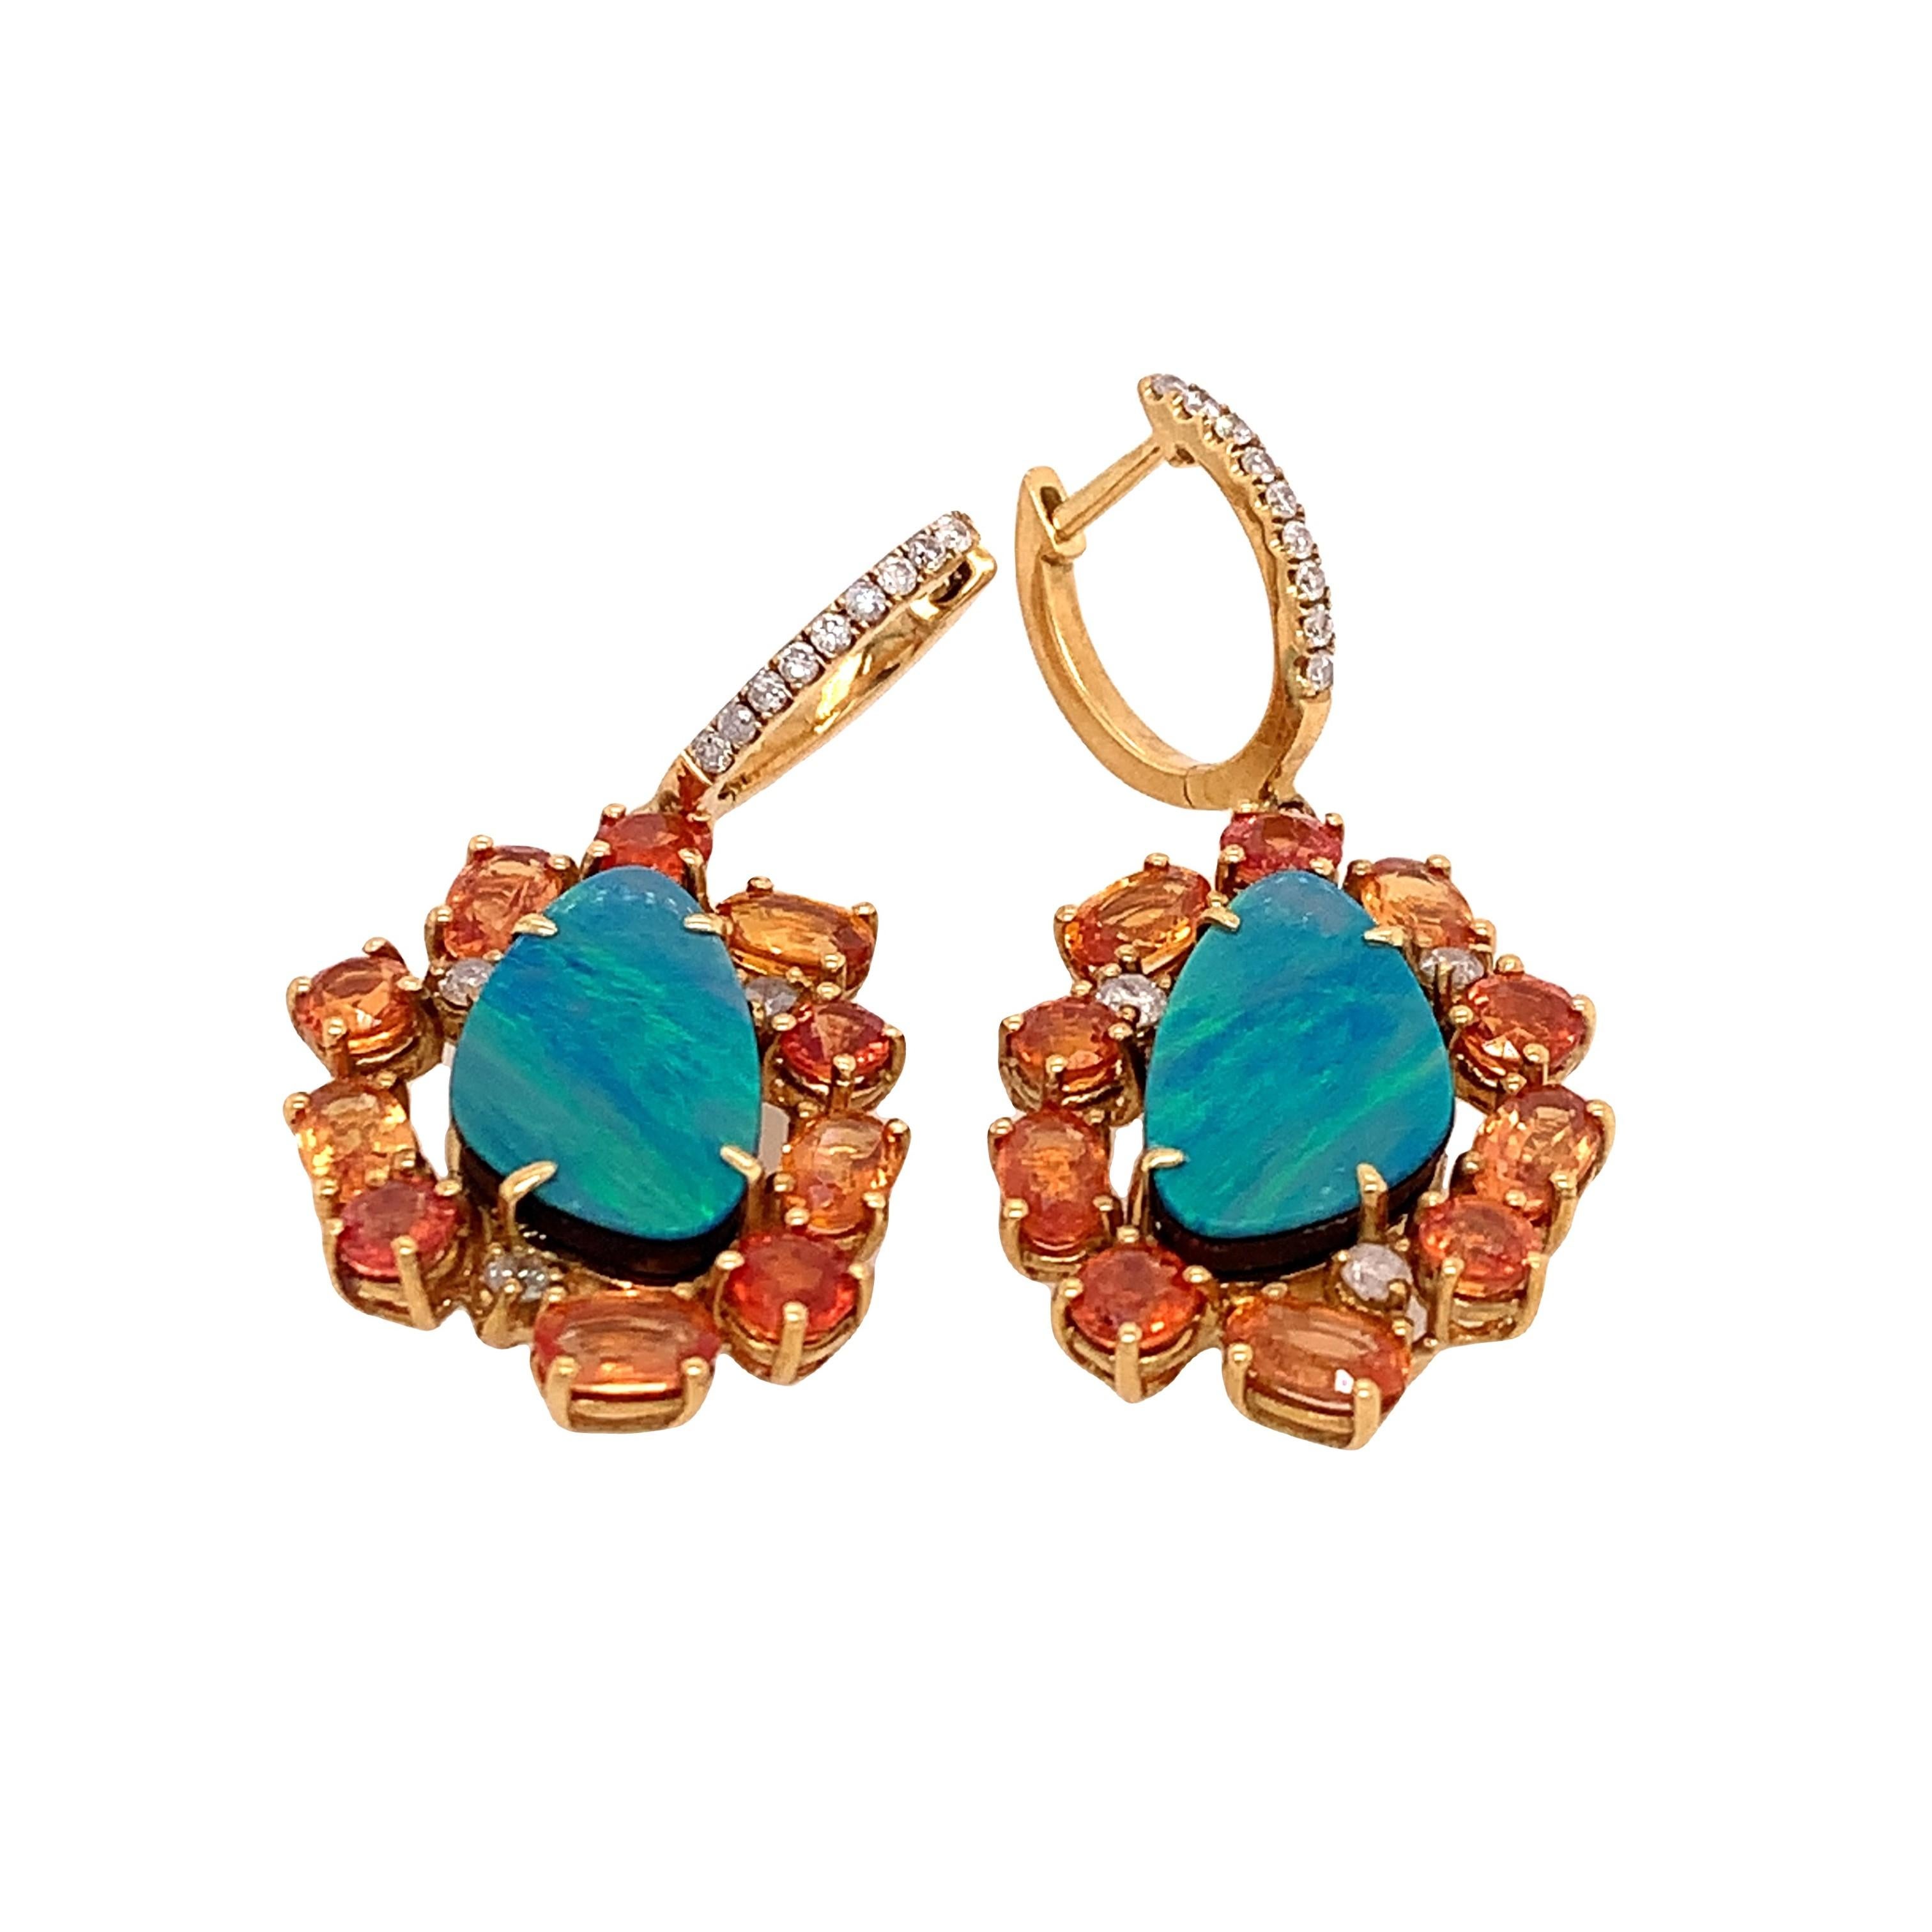 Collection Lillipad

Vous pouvez voir le jeu de couleurs parfait de l'opale bleue, des saphirs orange et des diamants dans ces boucles d'oreilles. Cette paire de boucles d'oreilles en or jaune 18 carats est parfaite pour l'été. 

Opale : 4,93ct